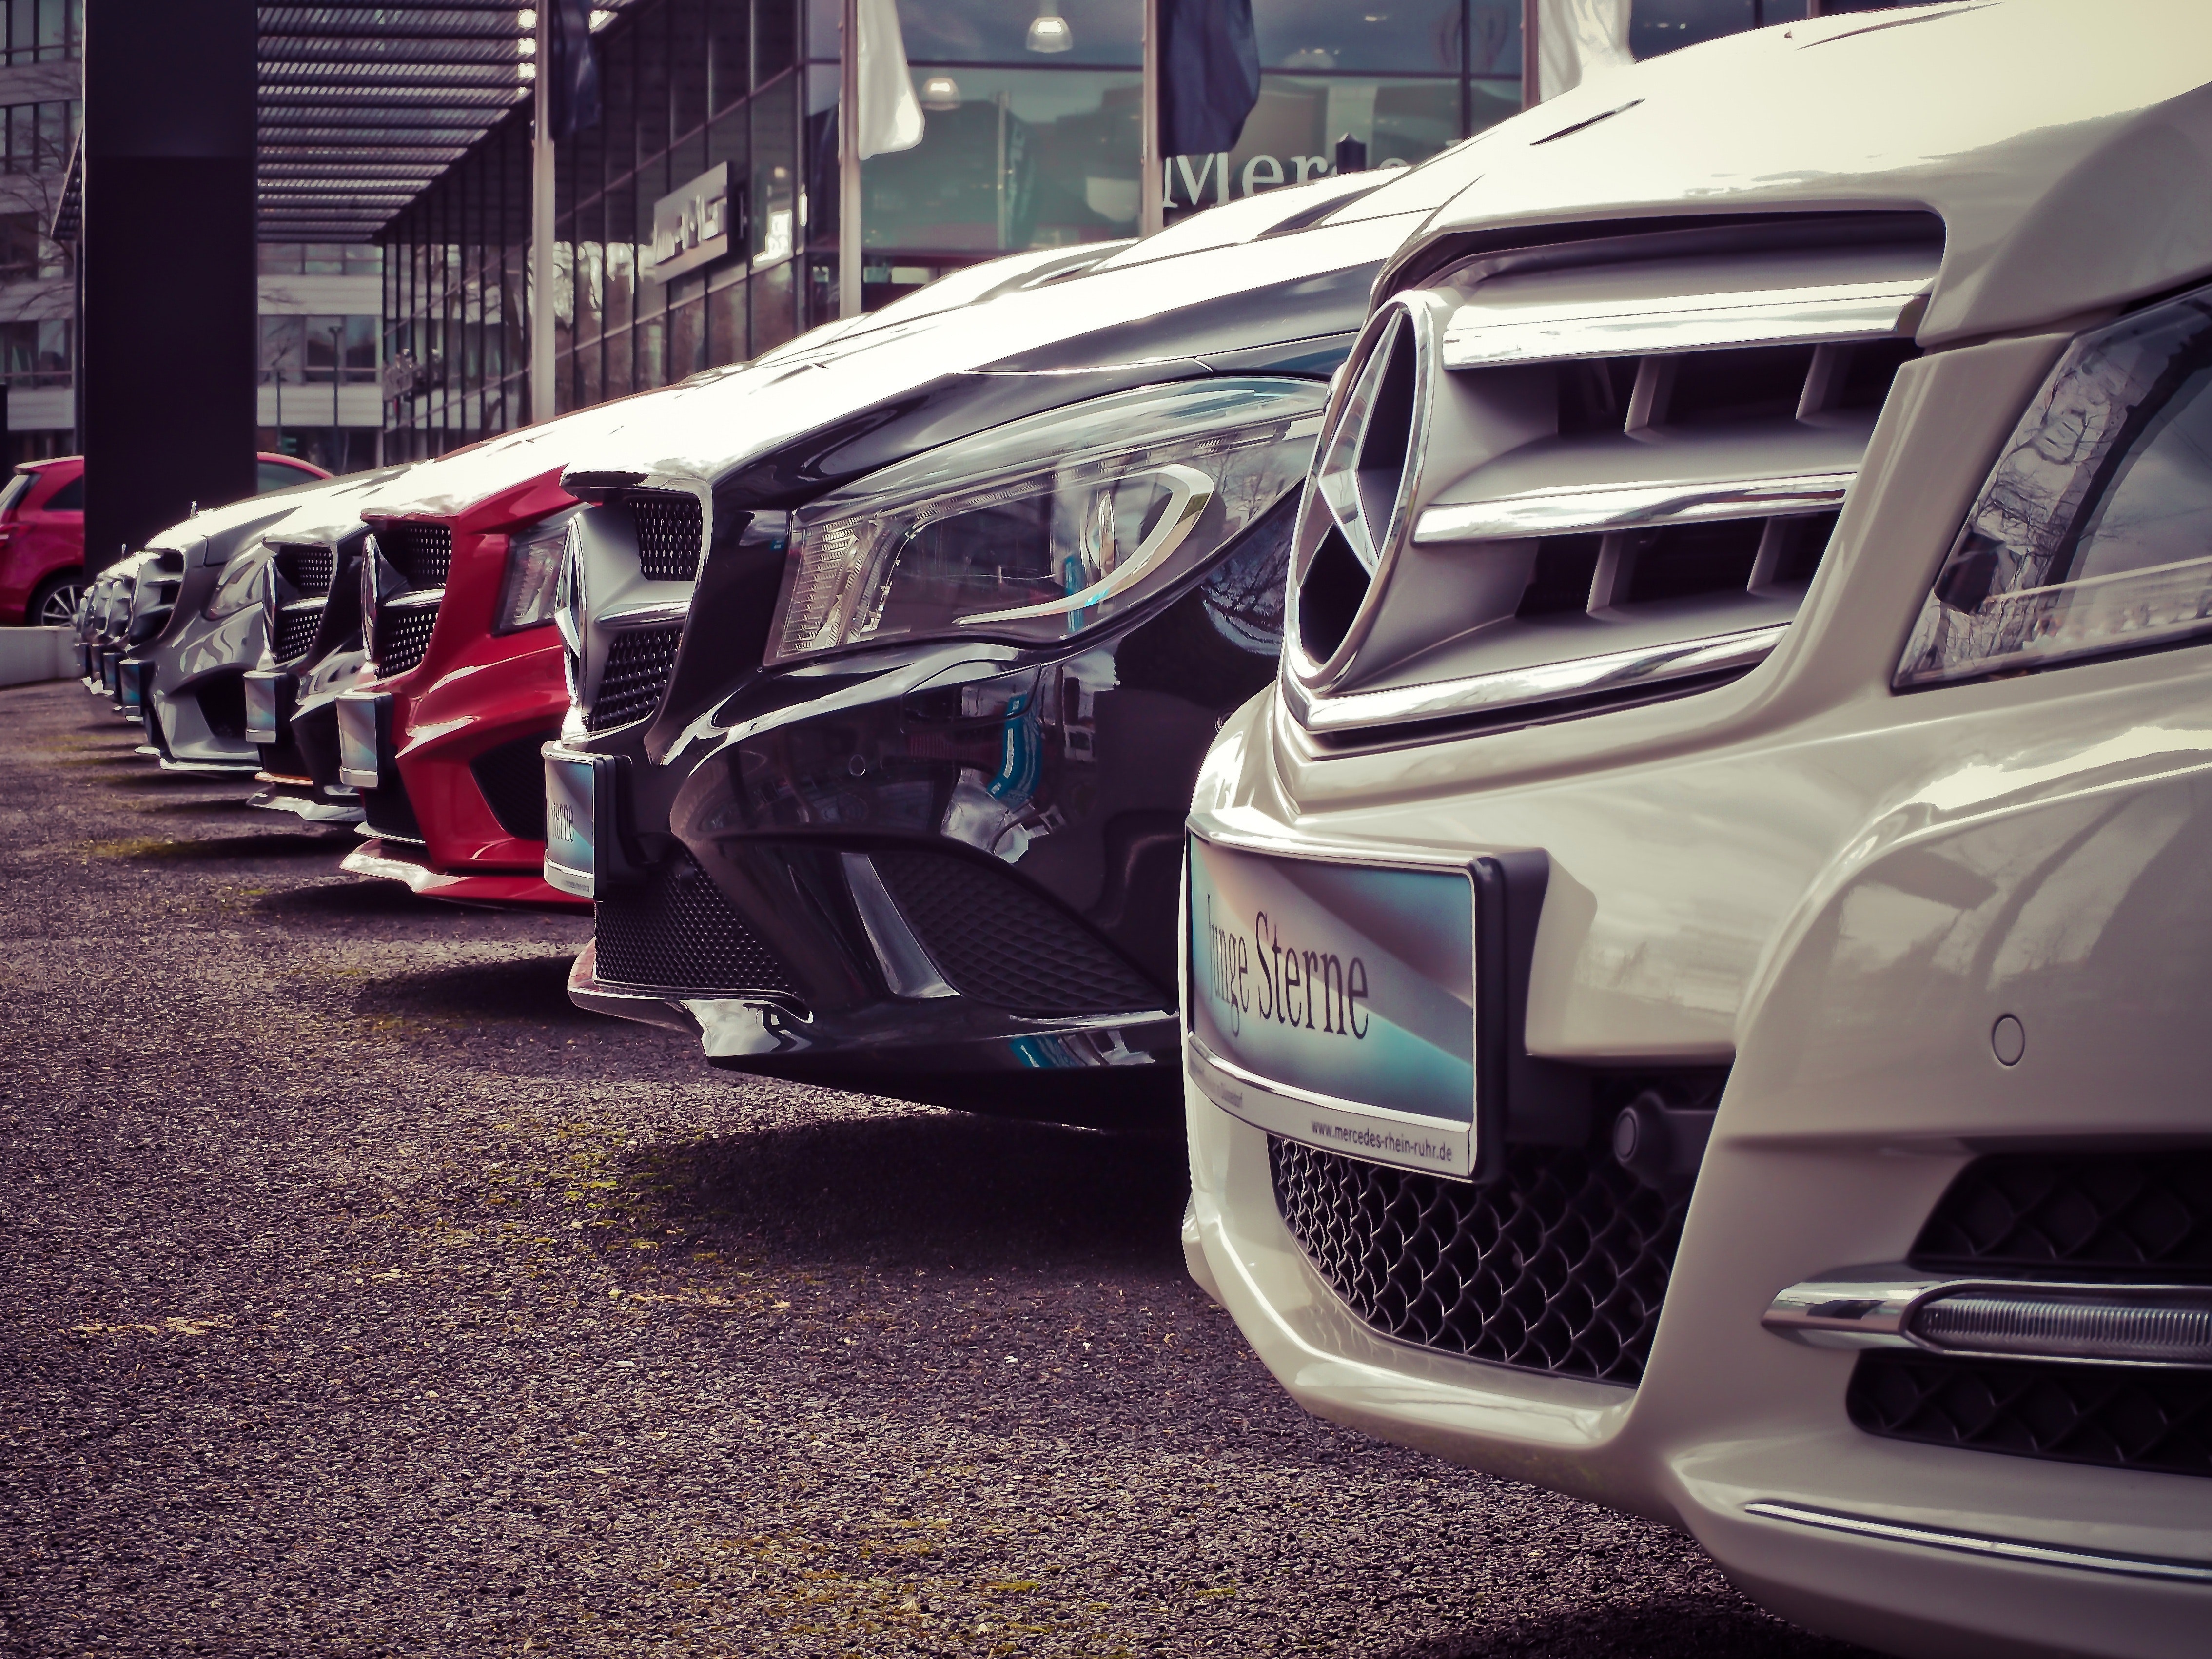 Mercedes fleet cars lined up